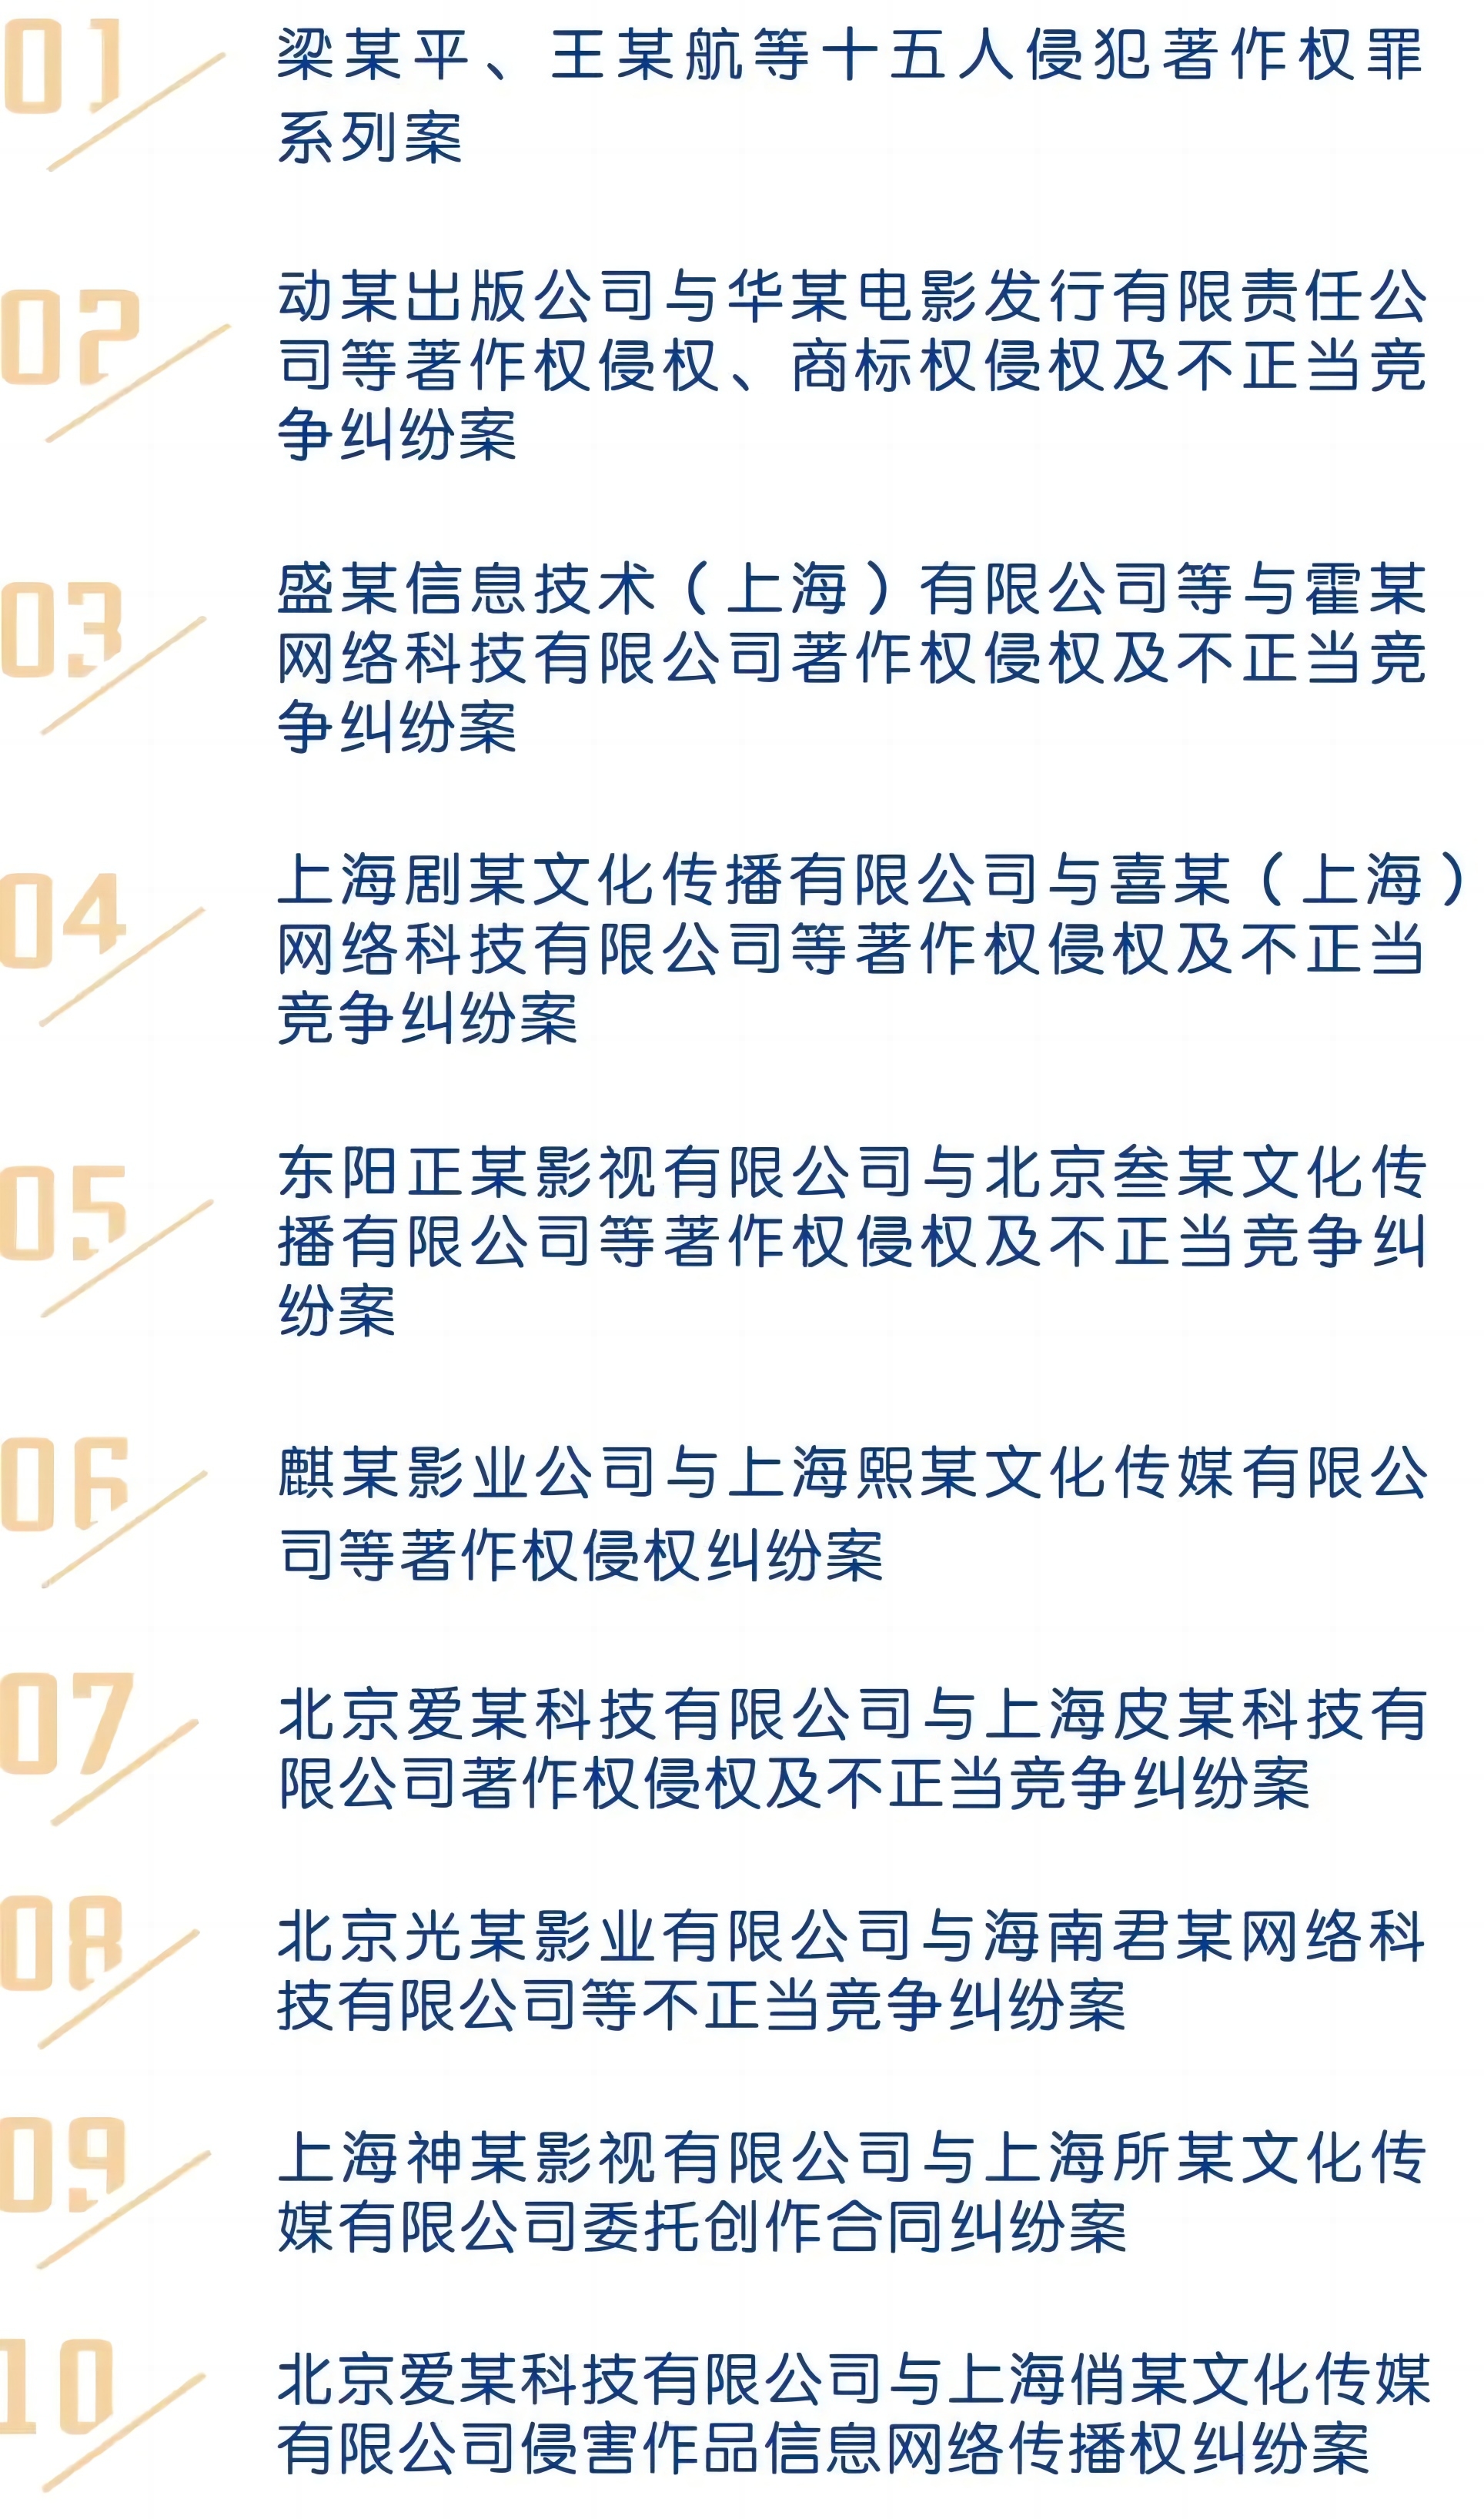 上海高院发布涉影视产业知识产权司法保护典型案例.jpg